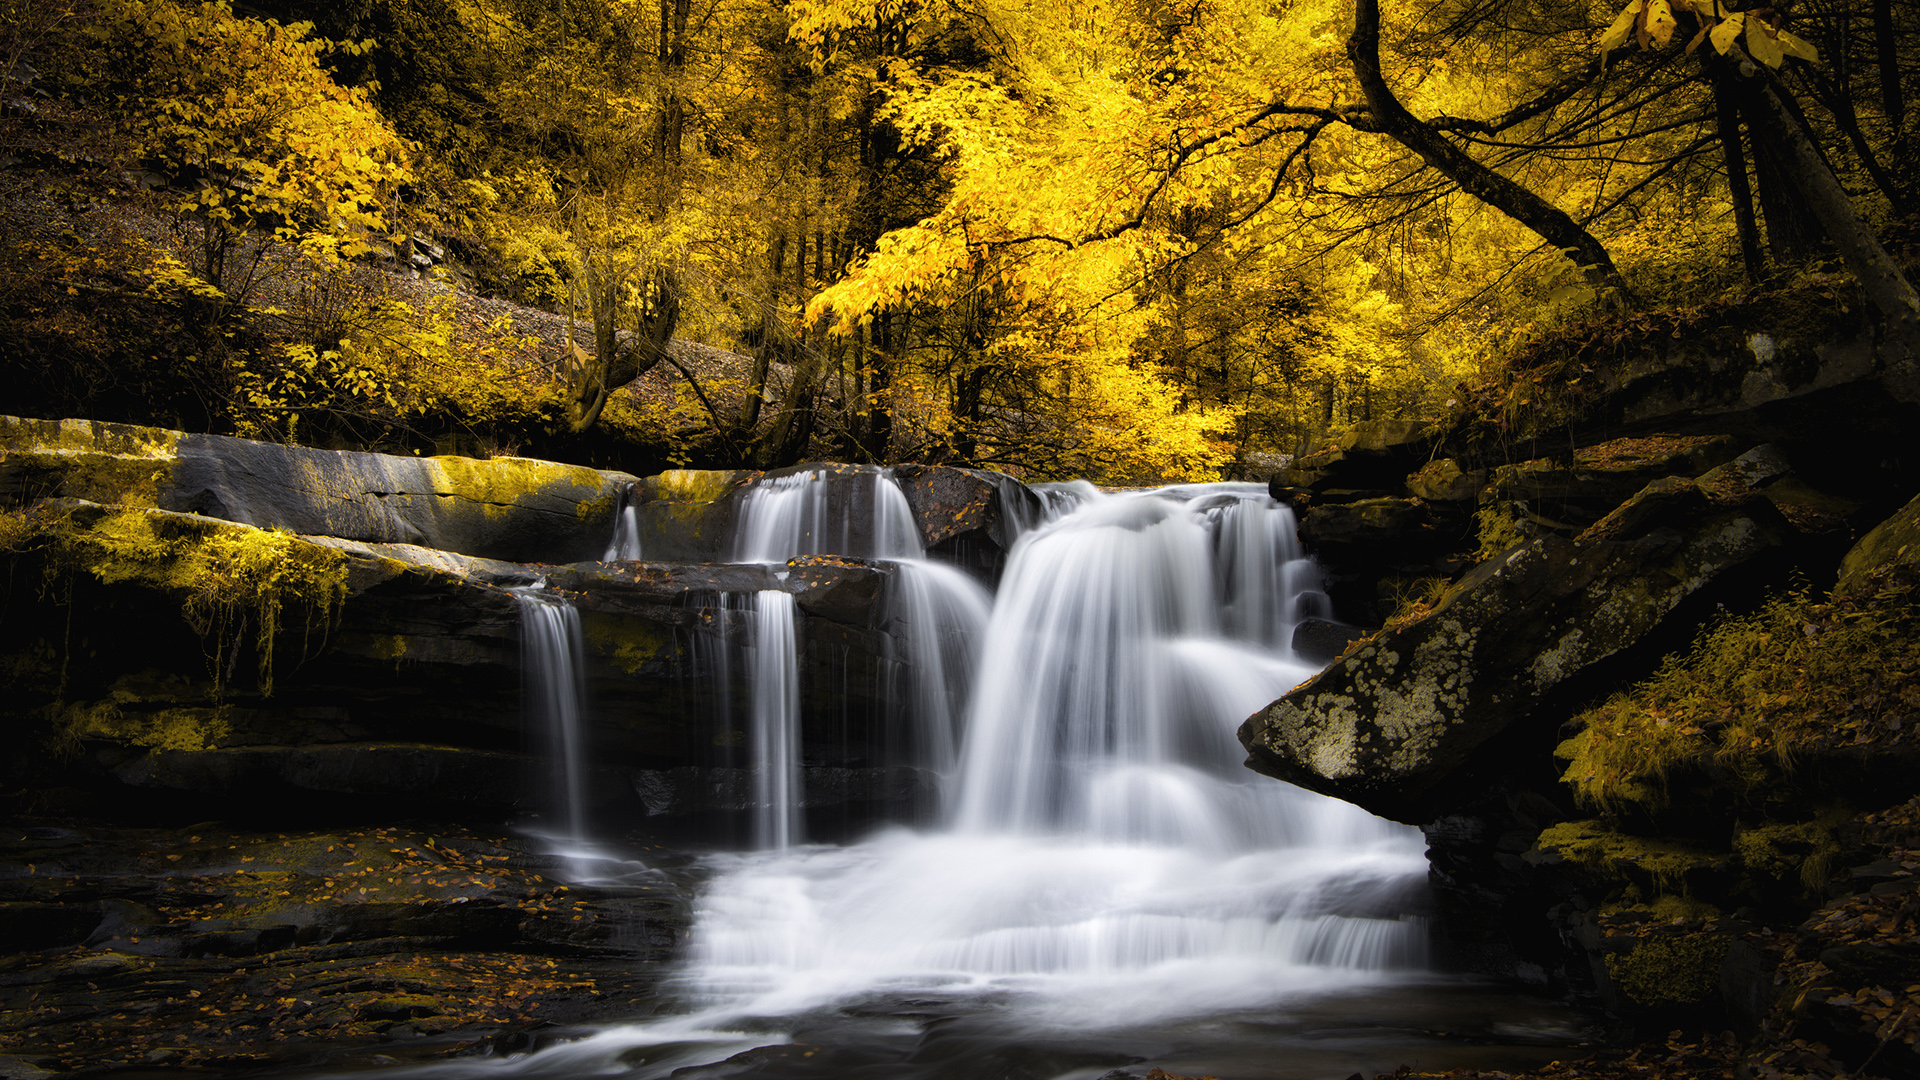 秋天森林黄色树叶,瀑布流水,自然美景桌面壁纸